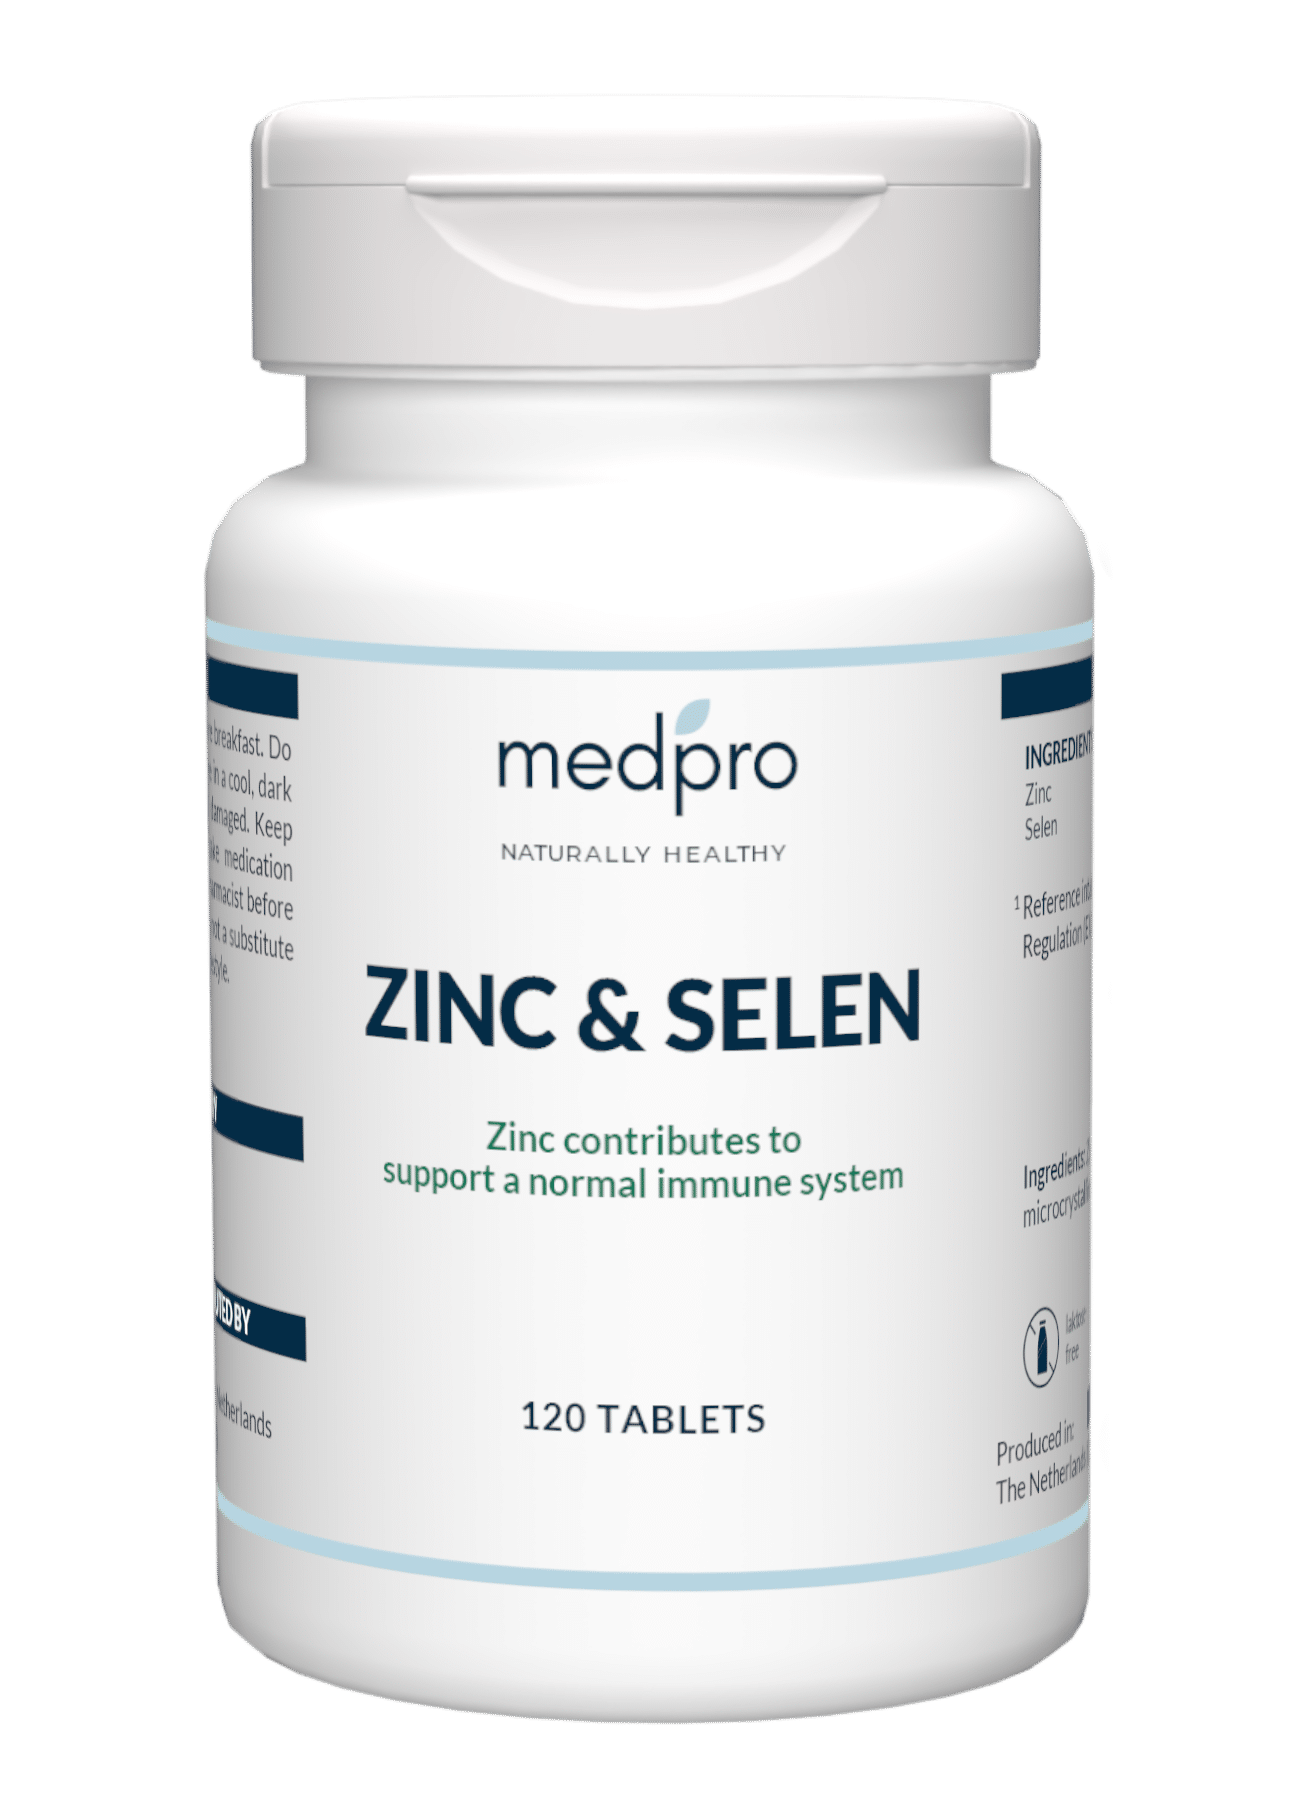 Zinc and selenium tablet bottle